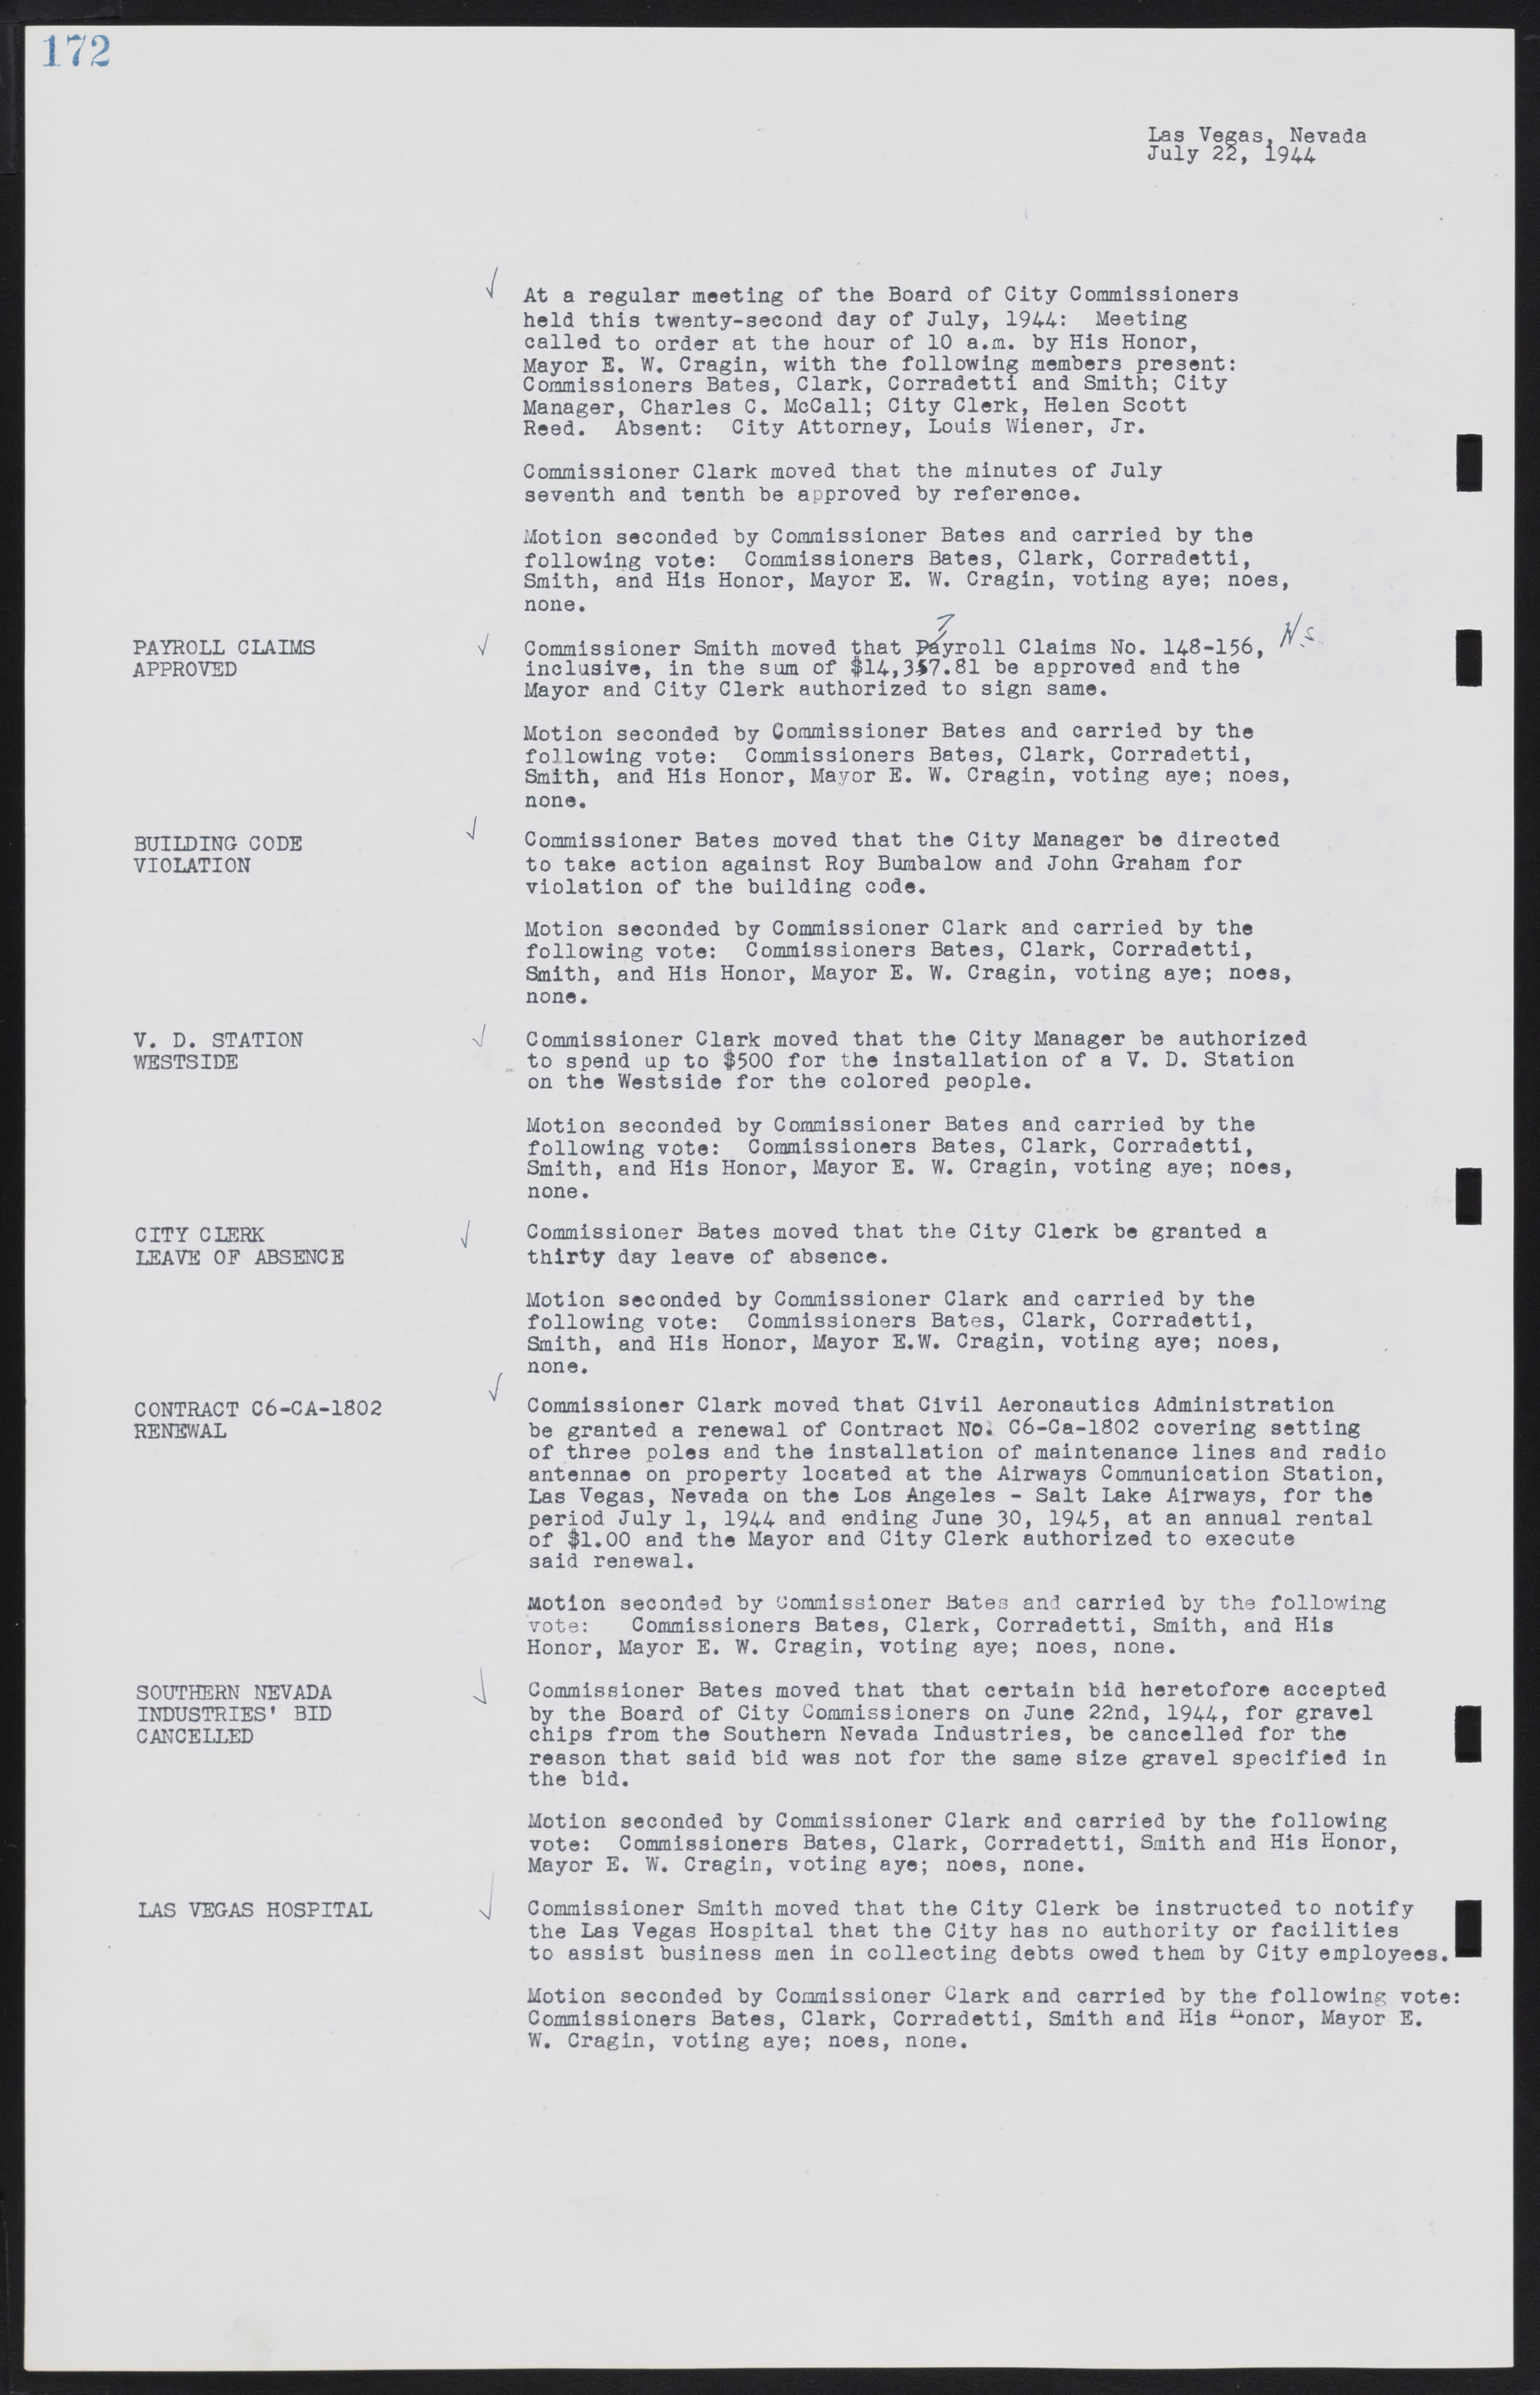 Las Vegas City Commission Minutes, August 11, 1942 to December 30, 1946, lvc000005-191